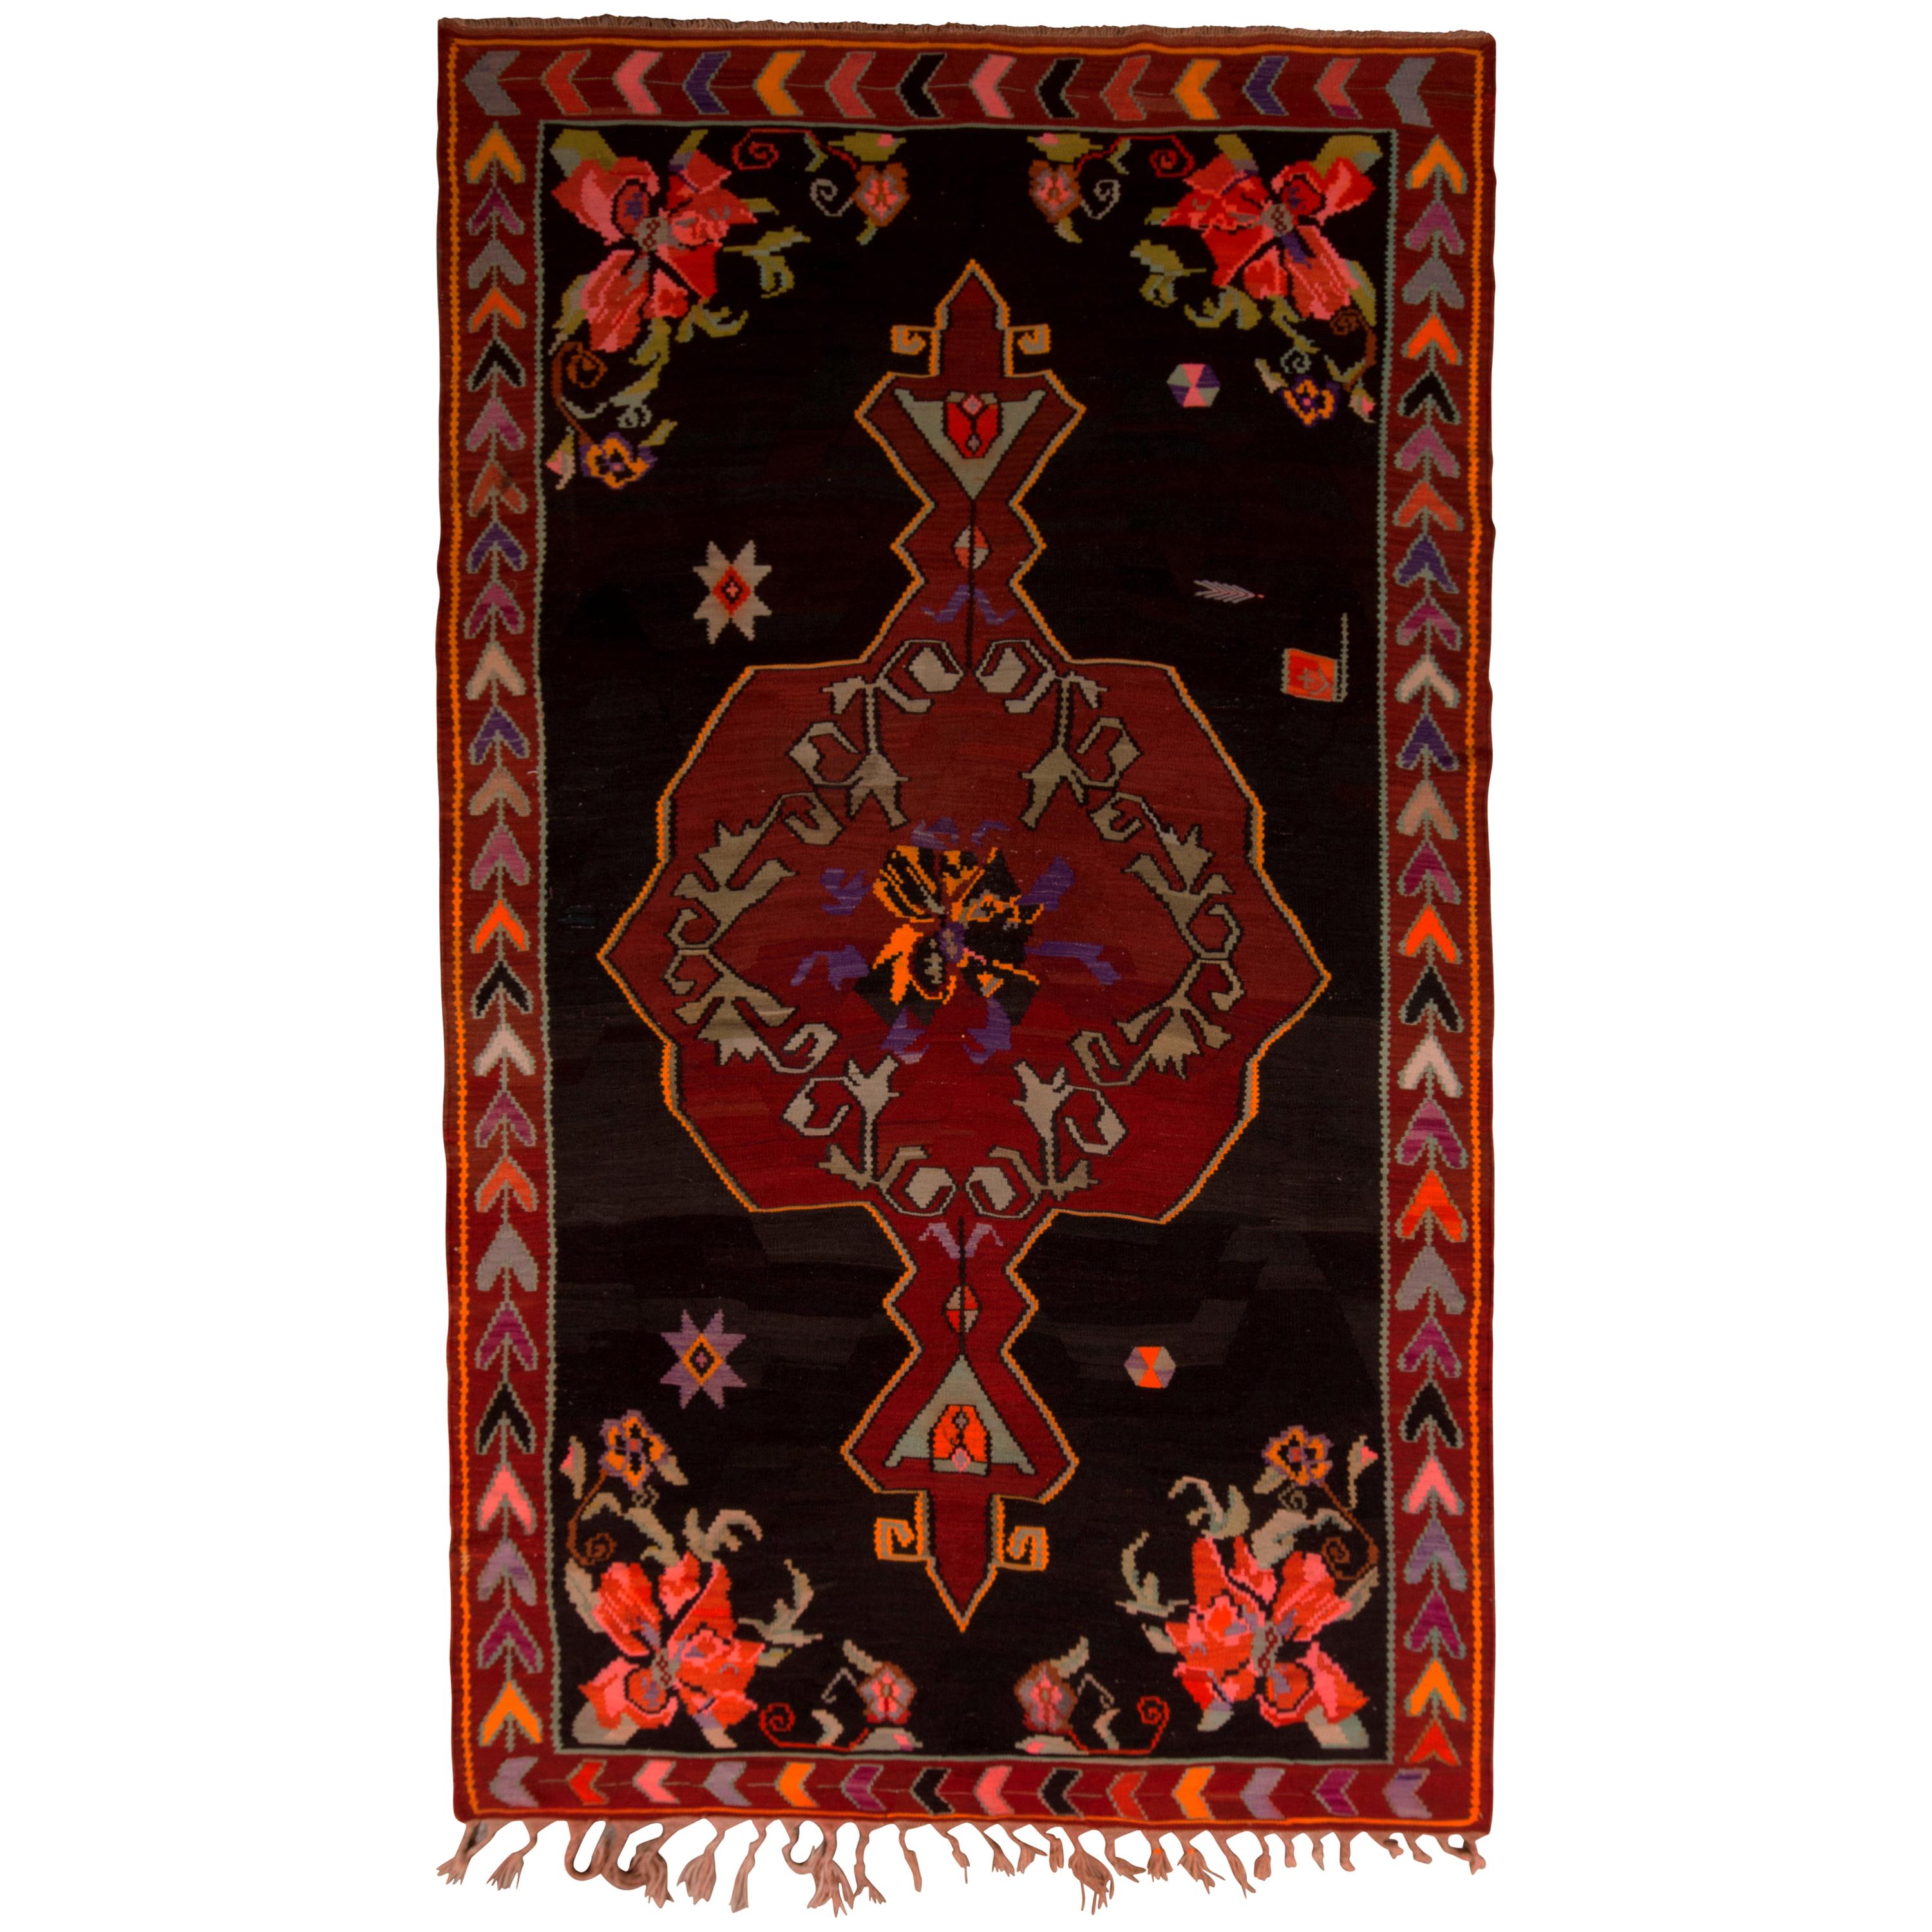 Midcentury Kilim Rug Black Red Floral Turkish Wool Flat-Weave by Rug & Kilim For Sale